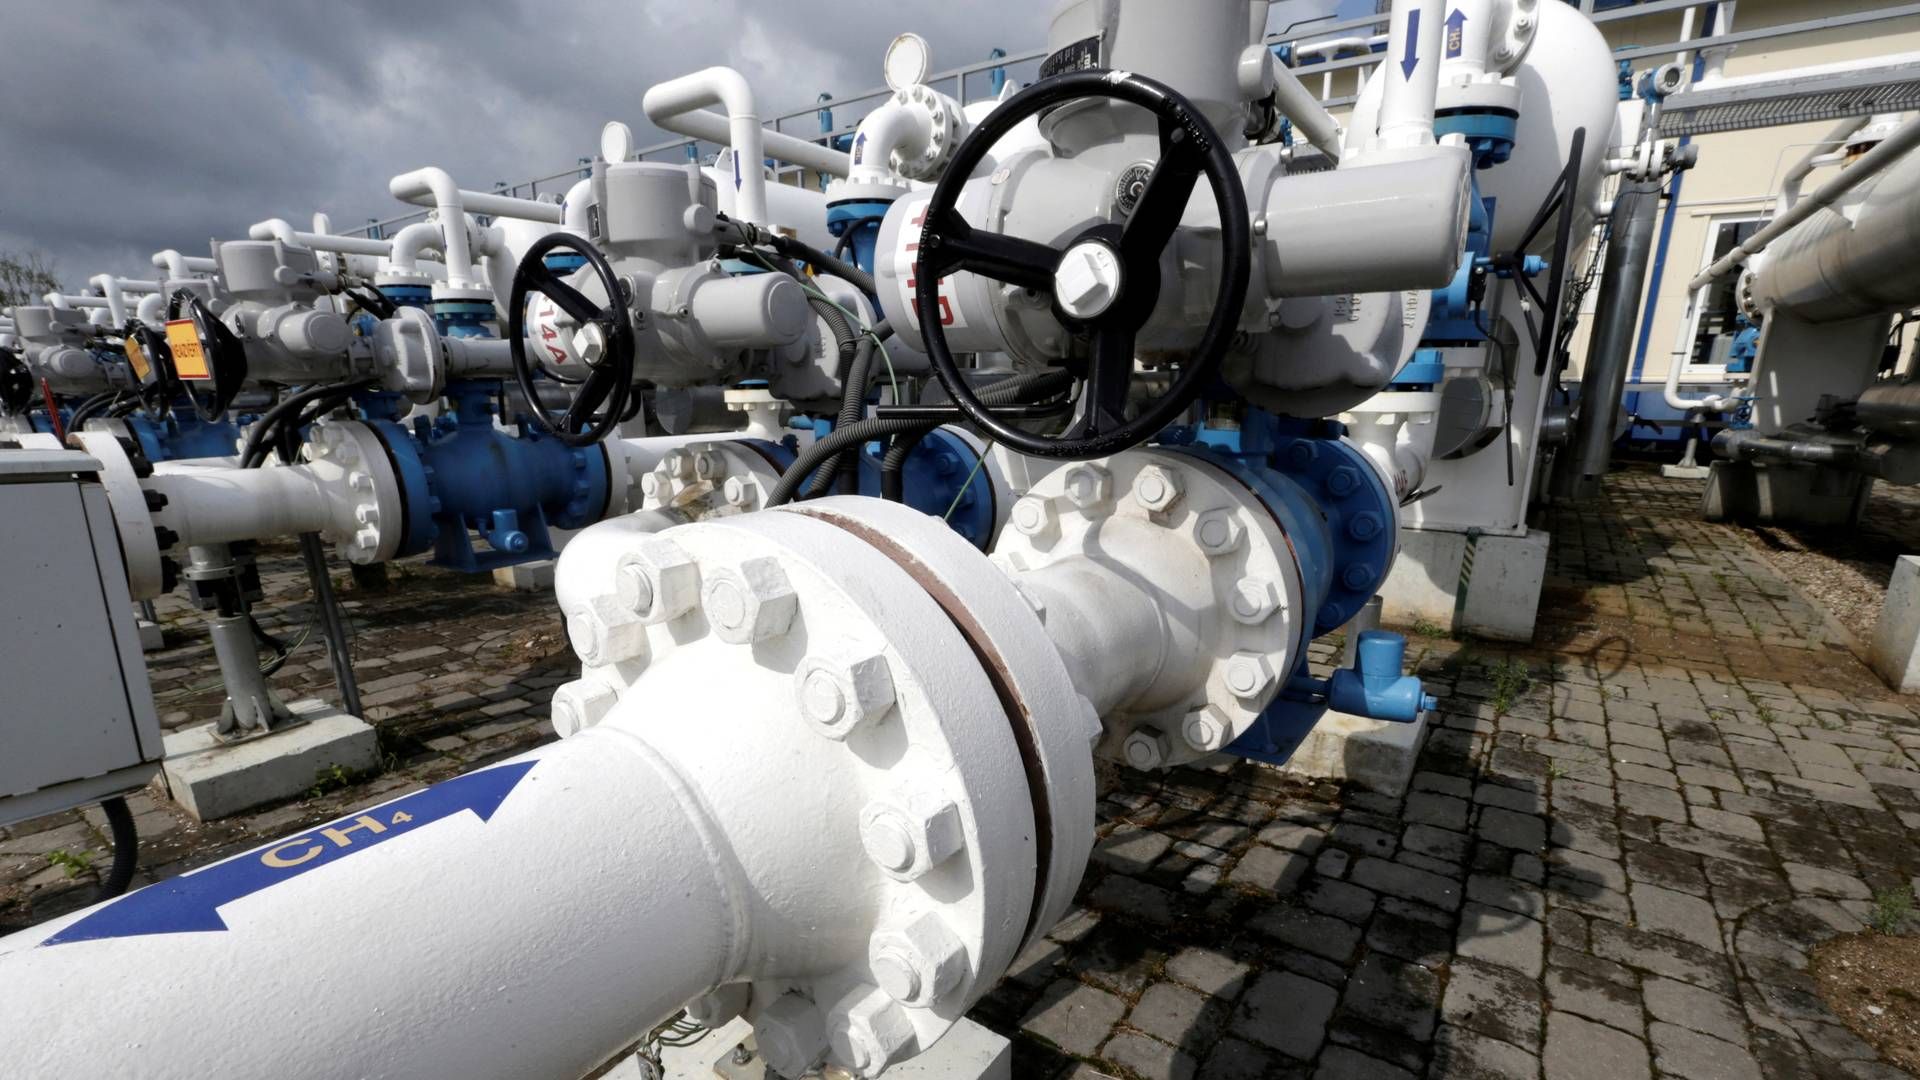 Naturgassen bliver billigere. | Foto: INTS KALNINS/REUTERS / X02120